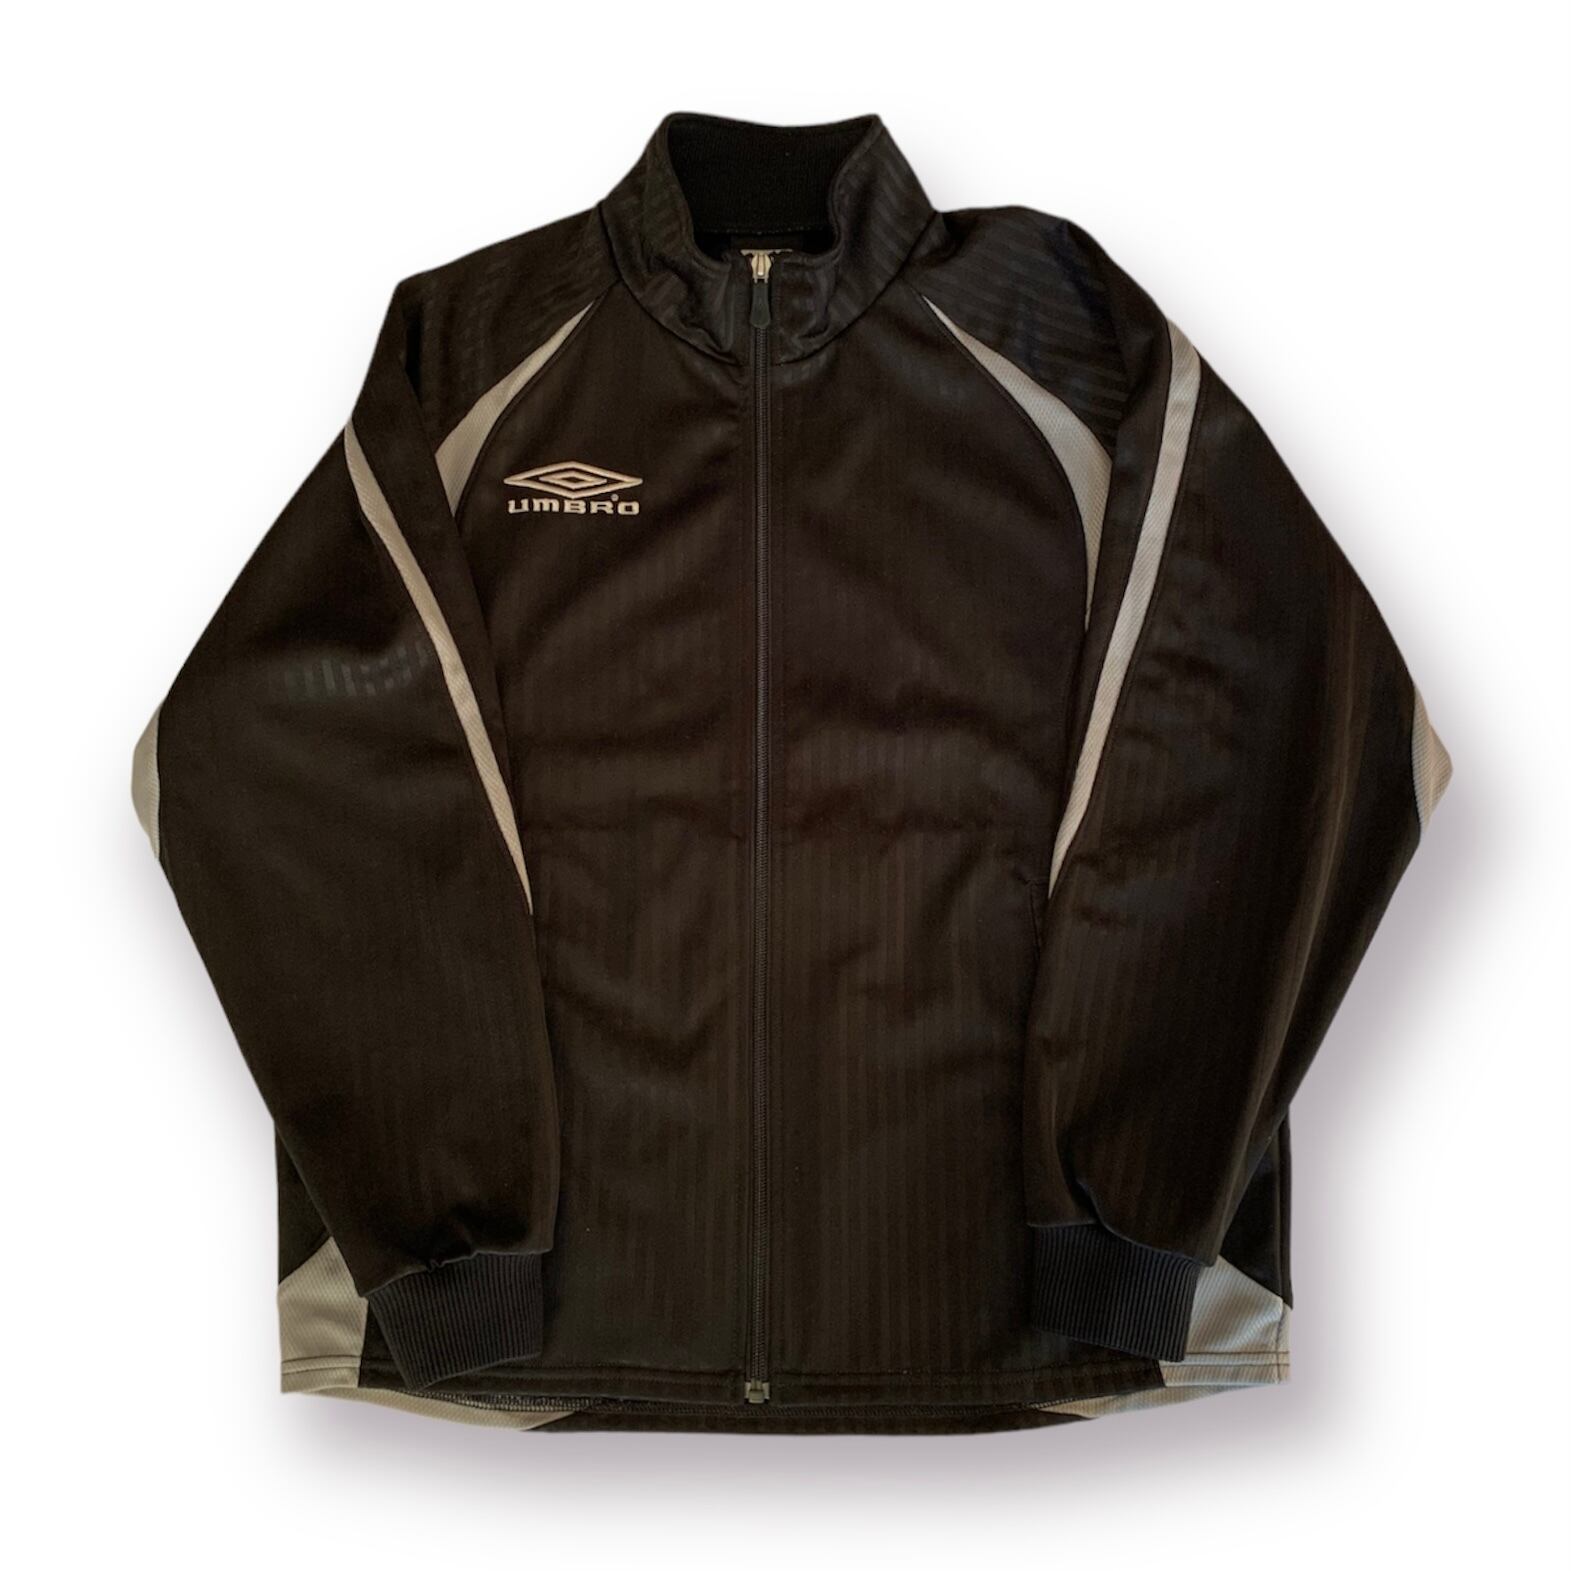 UMBRO / vintage Track jacket comoli